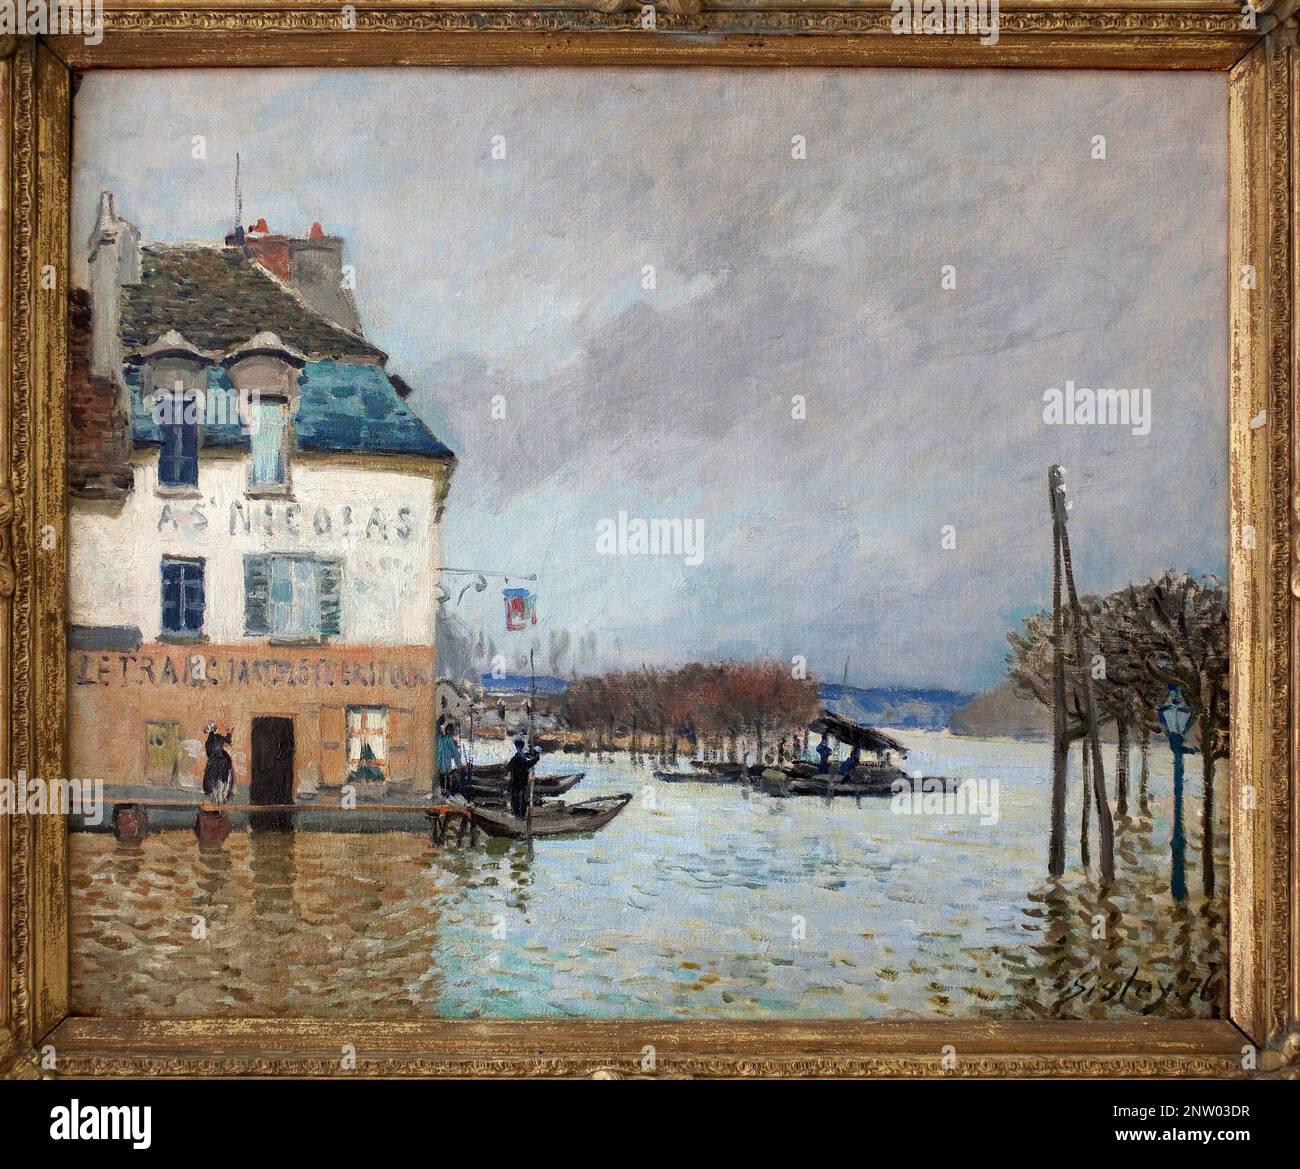 La barque pendant l'inondation a Port Marly. Peinture d'Alfred Sisley (1839-1899), huile sur toile, 1876, art francais 19e siecle, impressionnisme. Musee des Beaux Arts de Rouen. Stock Photo